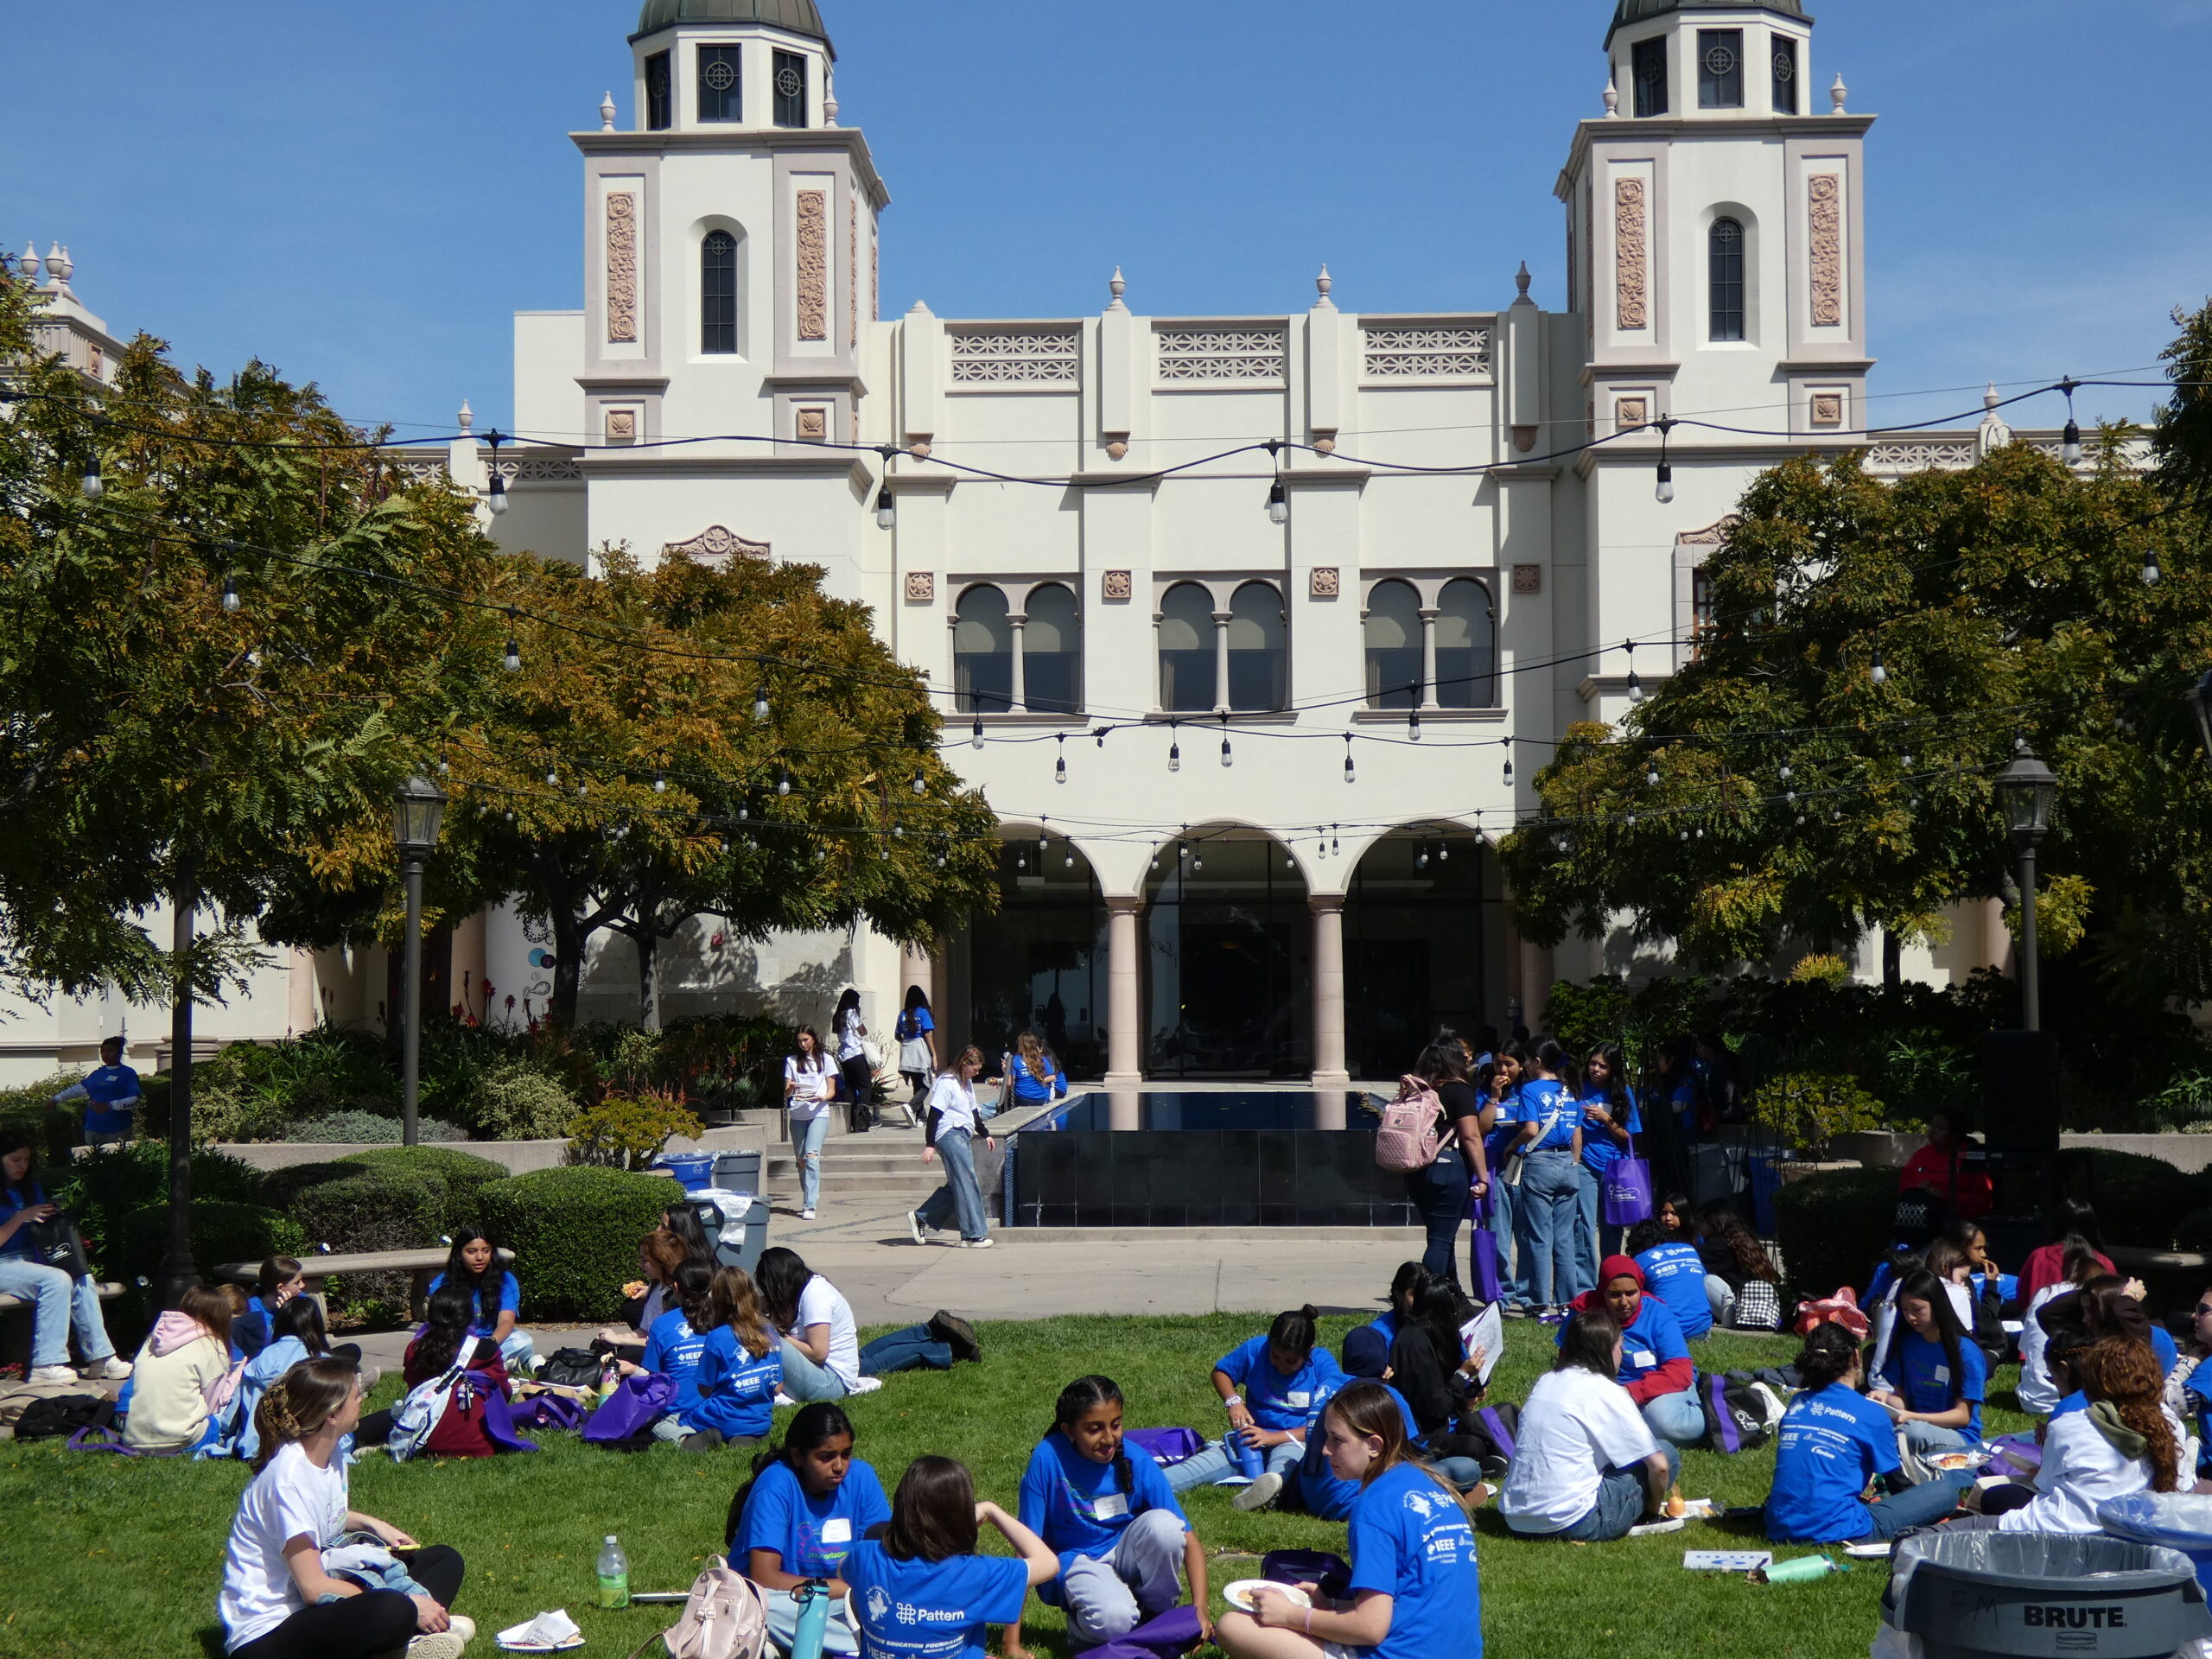 Un campus con muchos estudiantes paseando por el recinto con camisetas a juego.